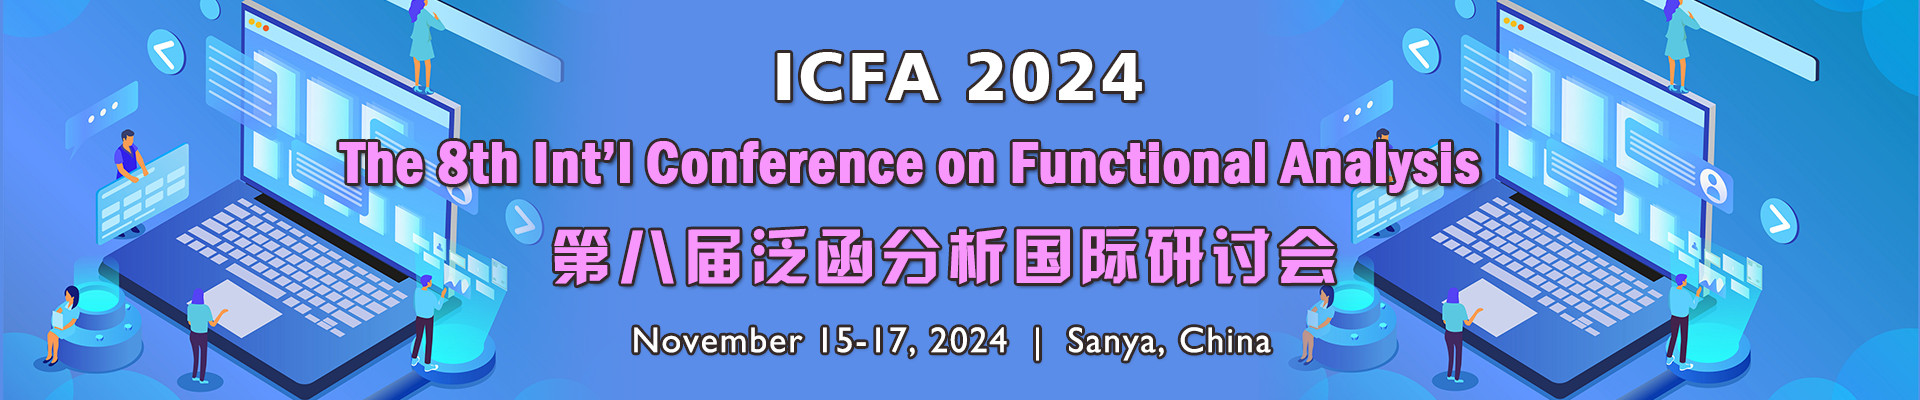 第八届泛函分析国际研讨会(ICFA 2024)